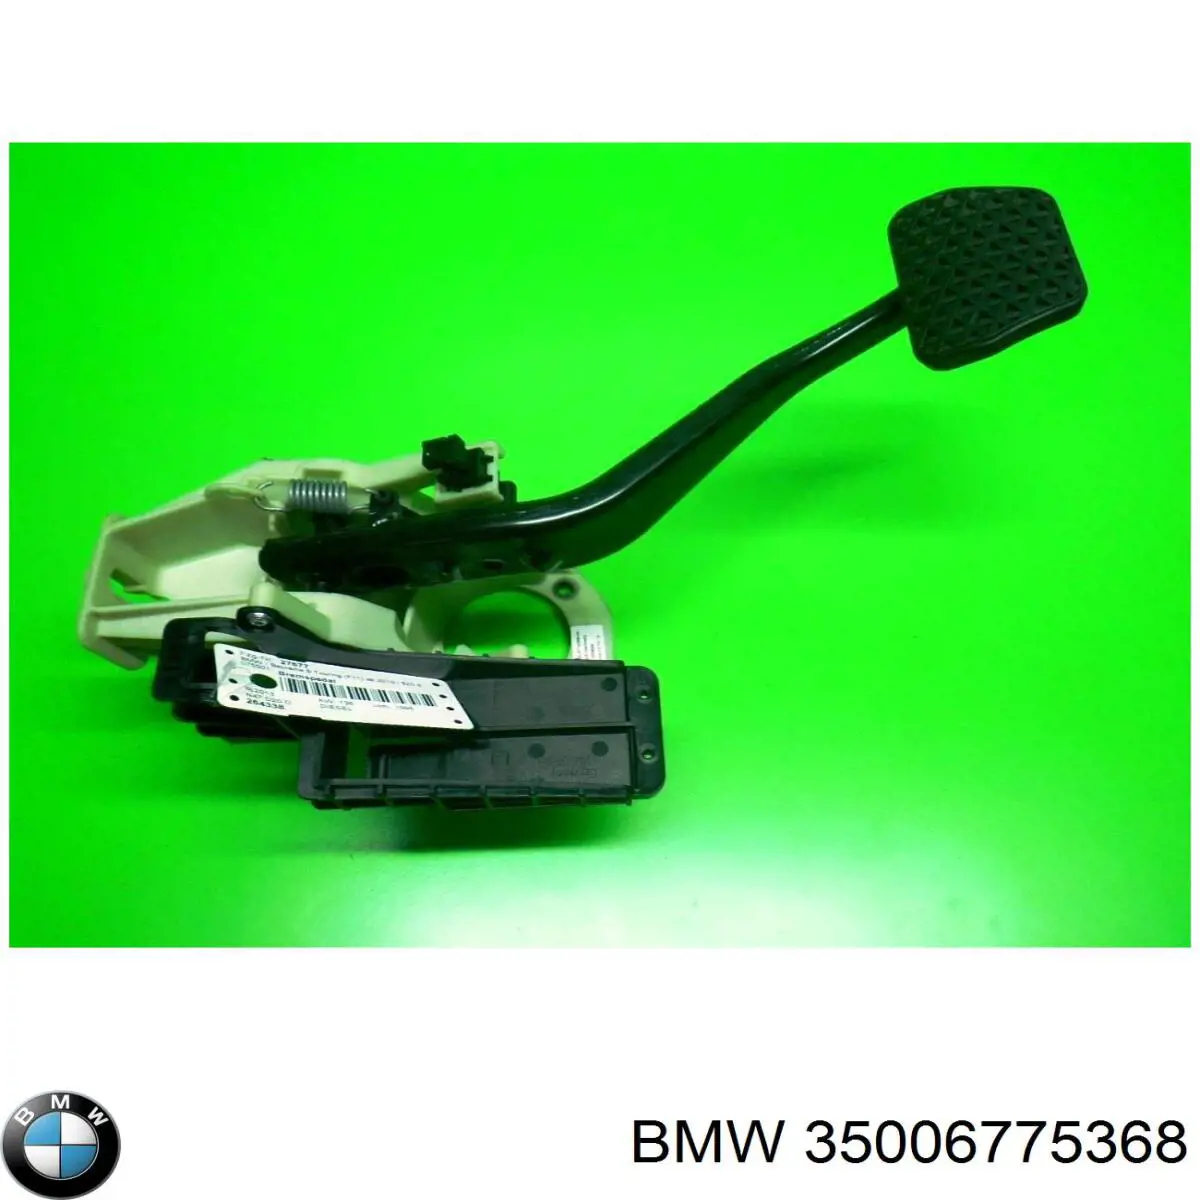 Pedal do freio para BMW 5 (F10)